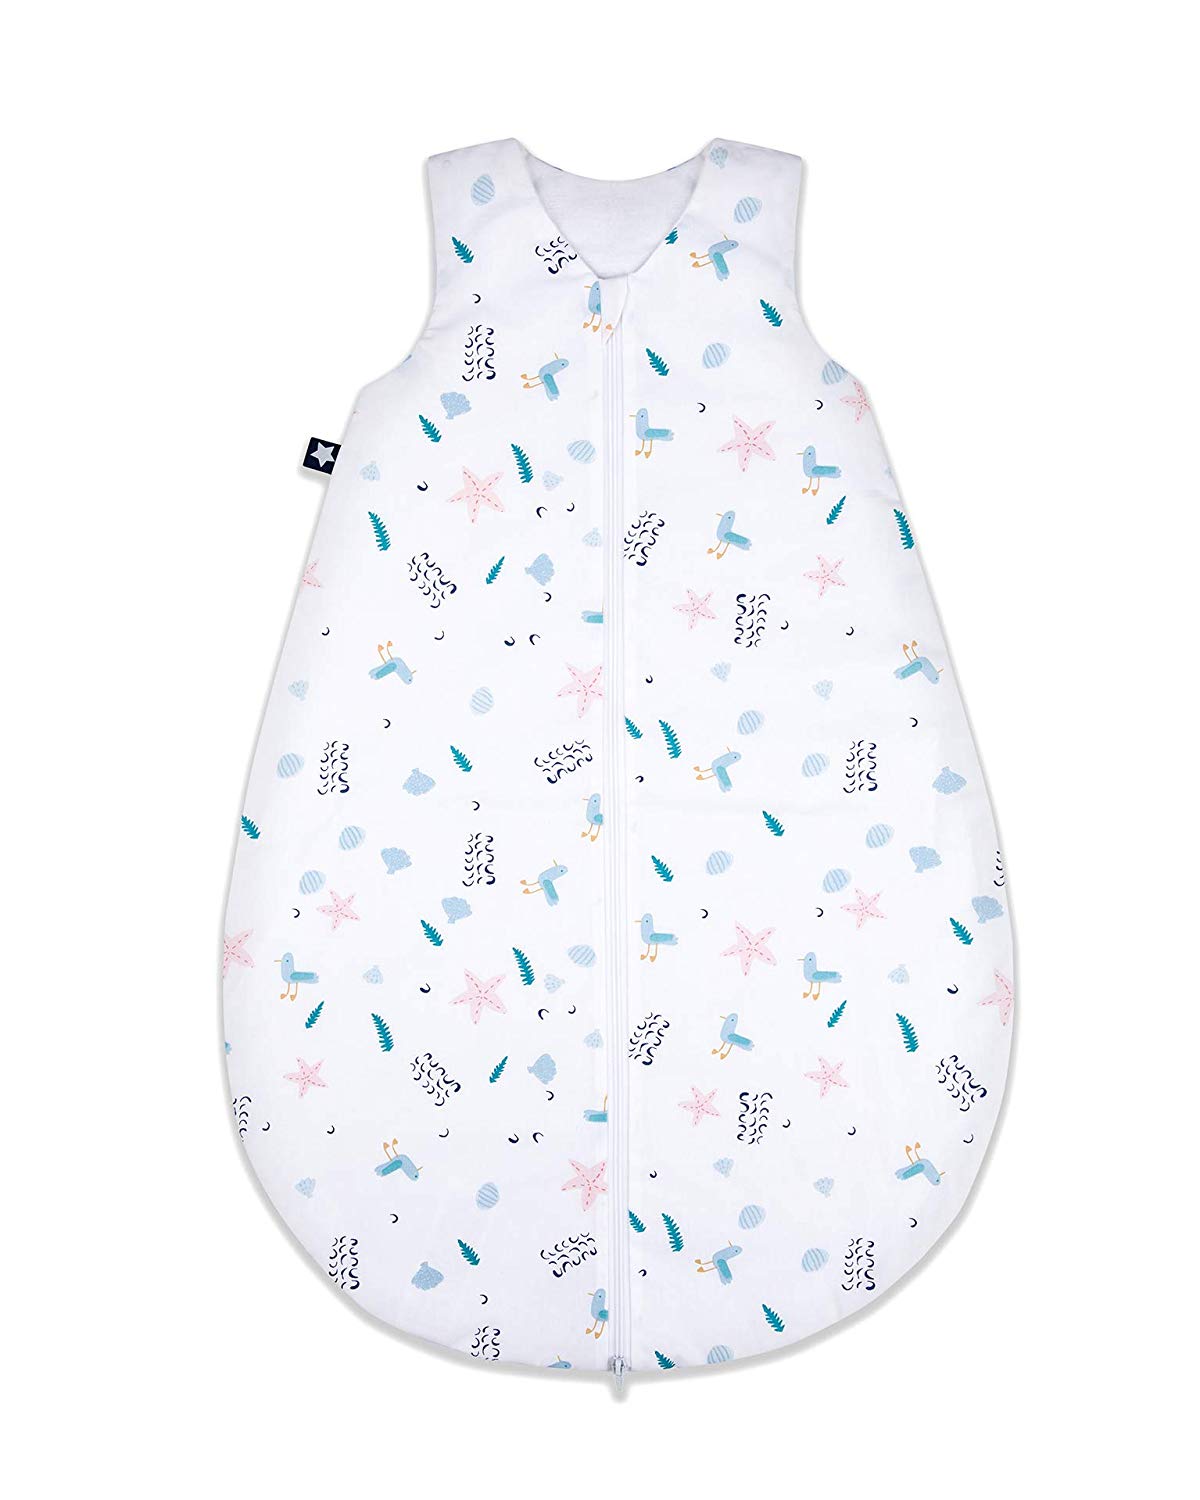 Julius Zöllner Baby’s Sleeping Bag, Summer or year-round Sleeping Bag, Standard 100 by Oeko-Tex, Made in Germany, in Various Designs and Sizes Summer sleeping bag Seagull